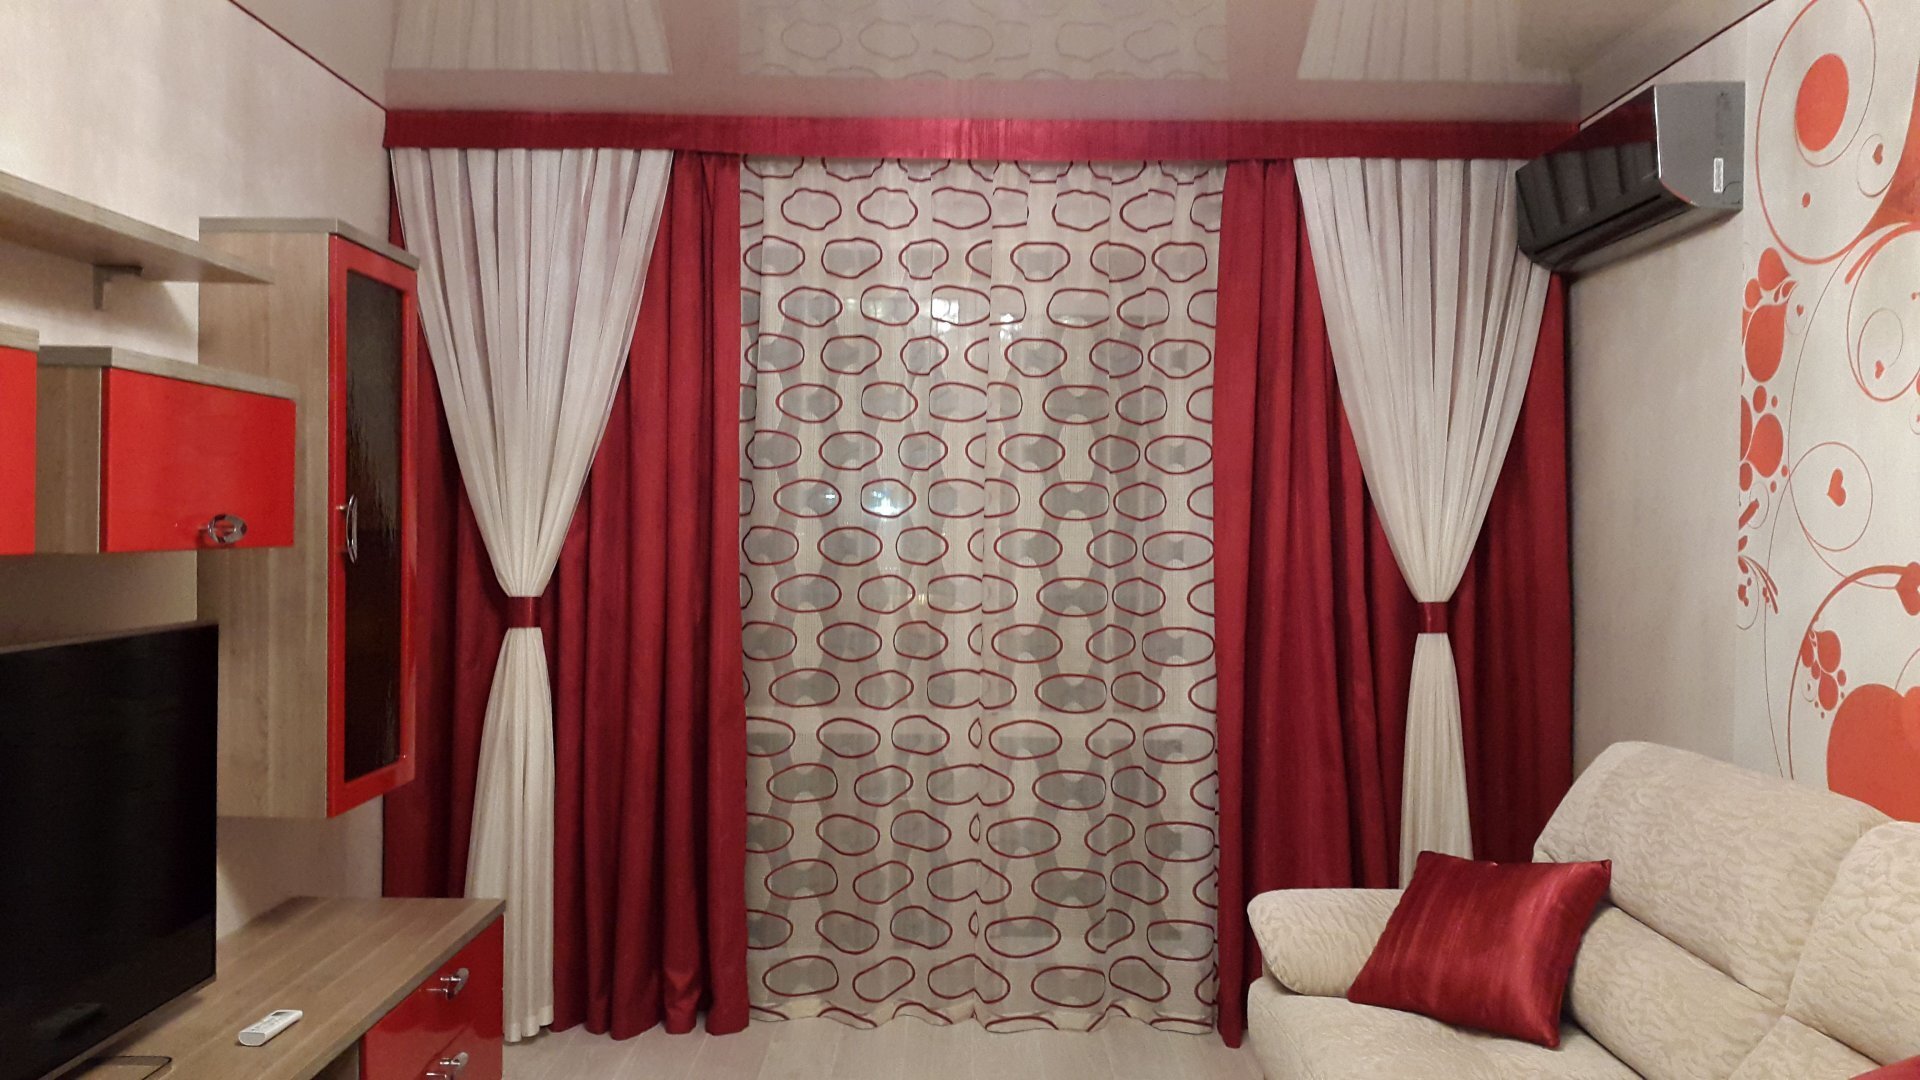 Бордовые шторы: специфика применения цвета. 91 фото гардин и занавесок для разных помещений